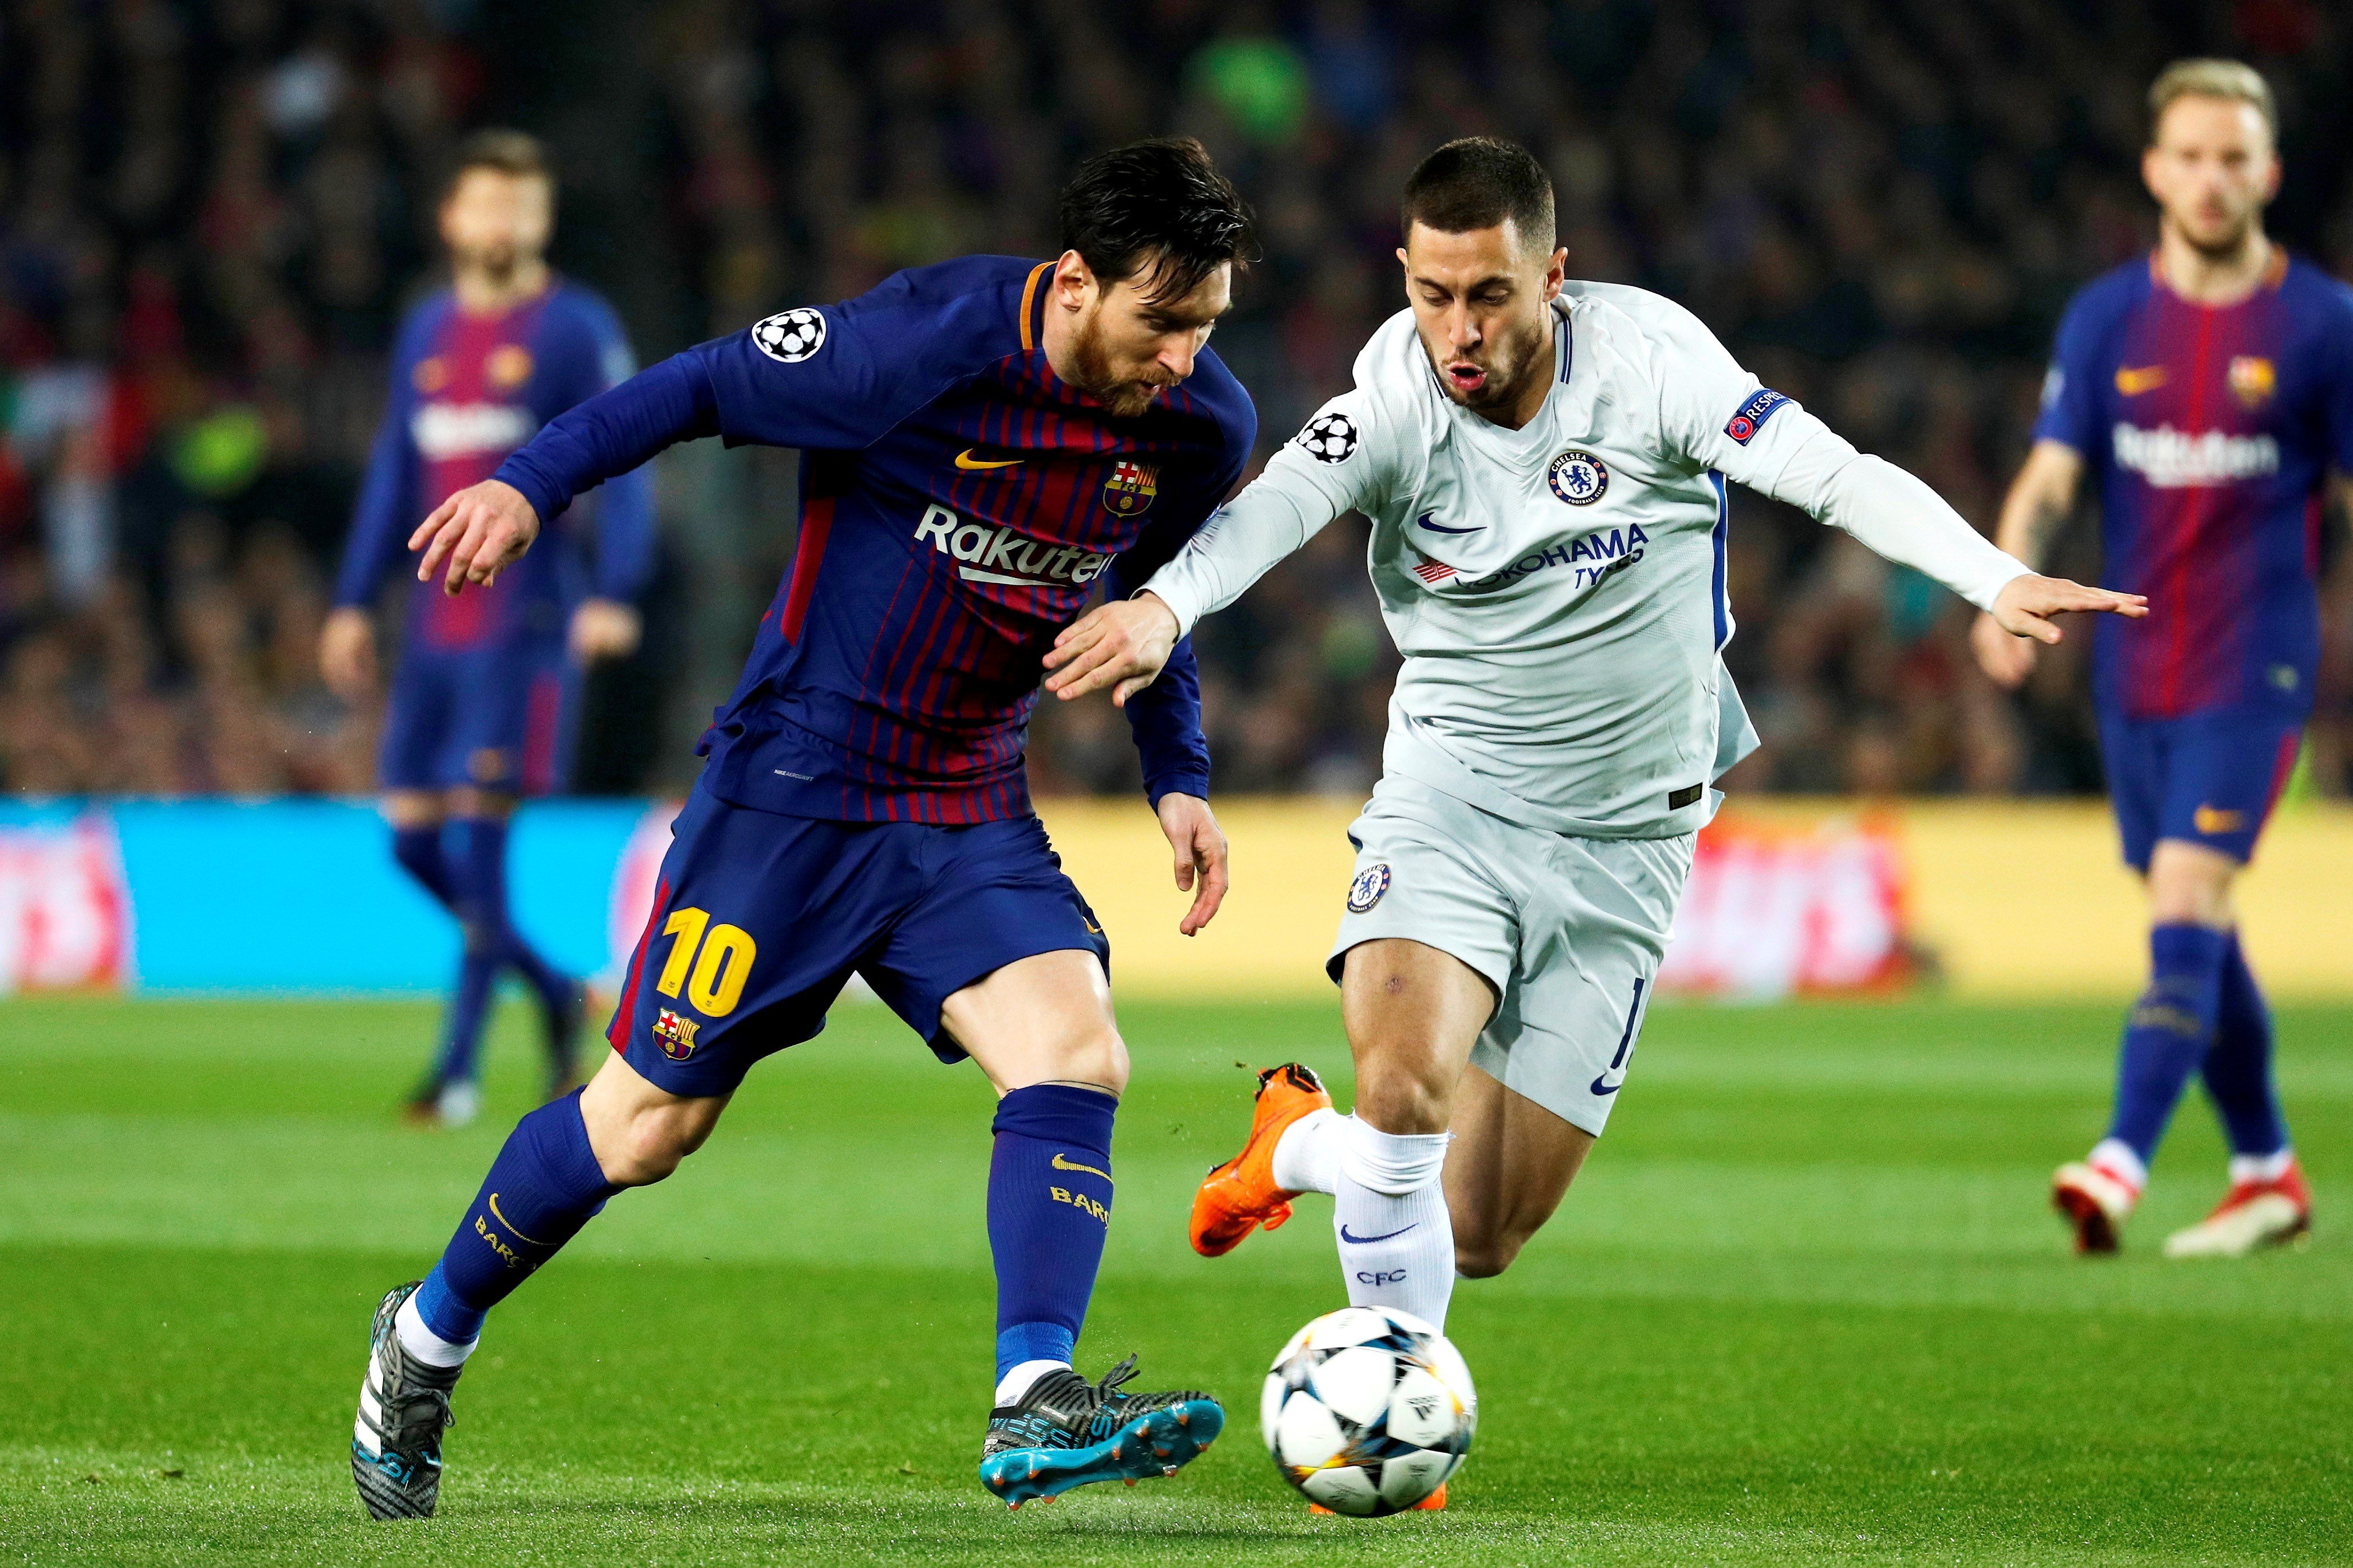 Un futurible del Madrid asegura que Messi "es el mejor de todos los tiempos"